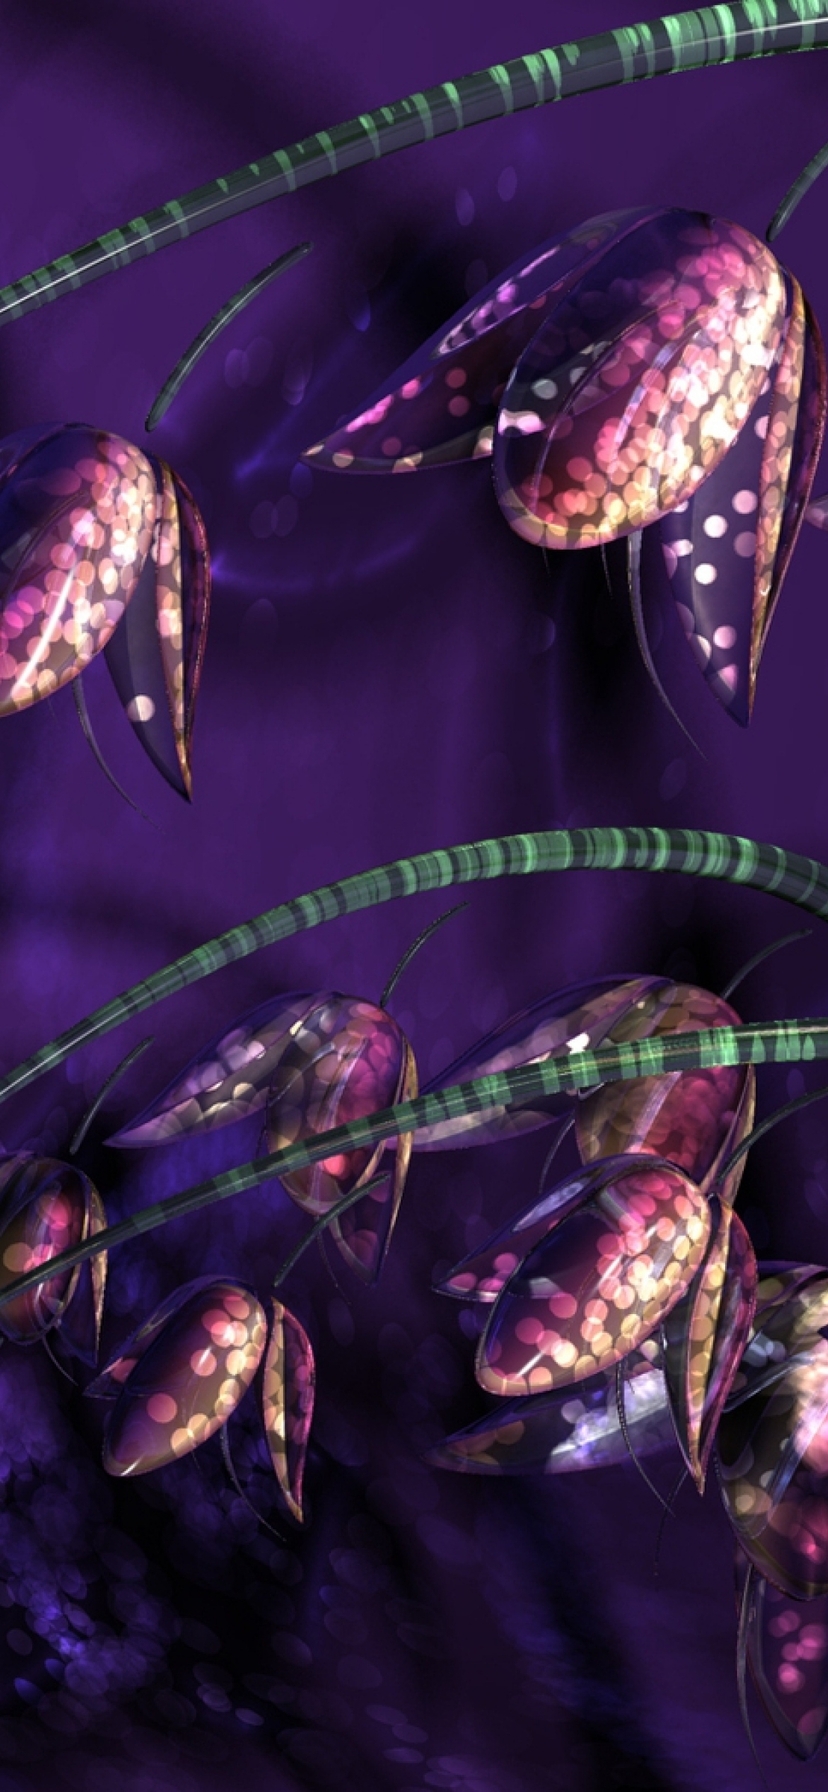 Картинка: Колокольчики, цветы, растение, сиреневый, фиолетовый